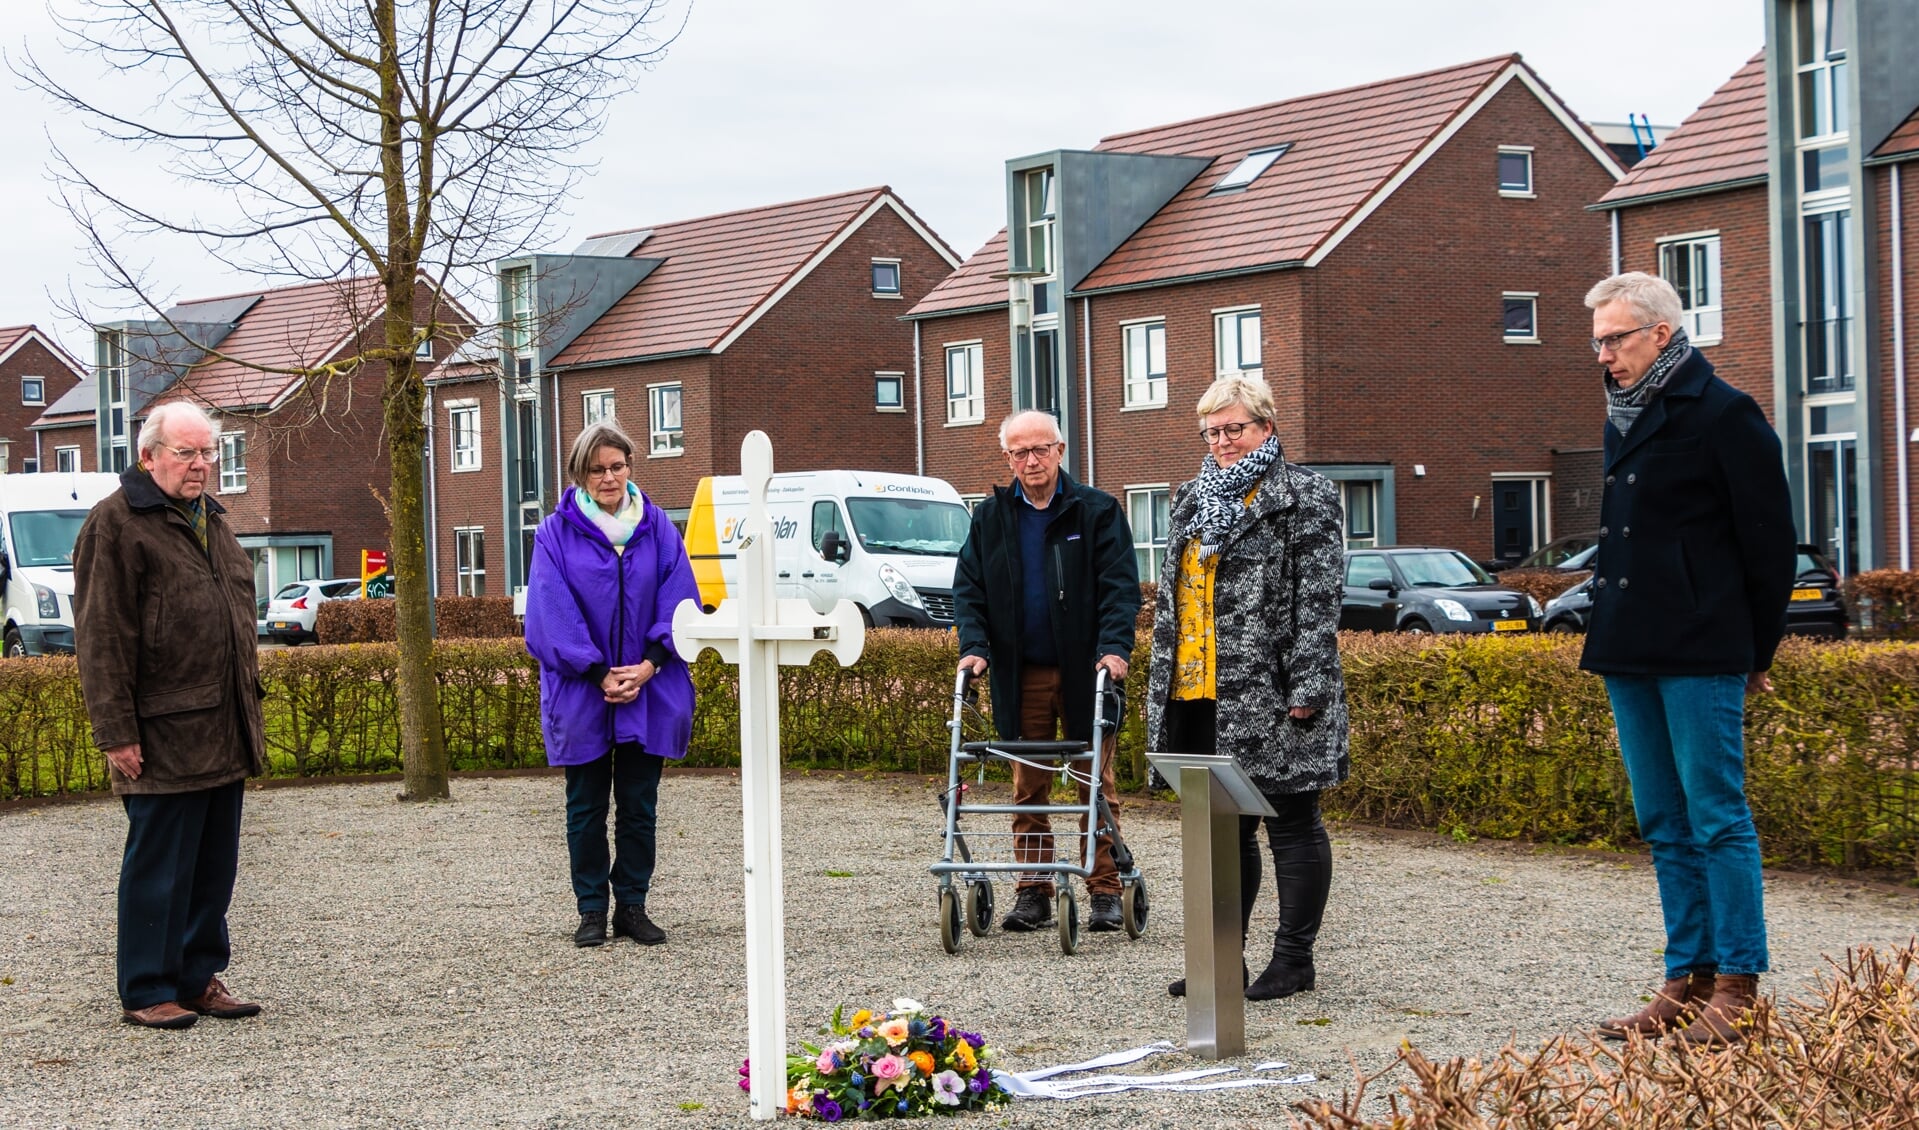 Wim Smeerdijk, Heleen Buijs, Hein Smeerdijk, Helmi Jansen en Dick Teunissen herdenken de gesneuvelde korporaal Periard. Foto: Henk Derksen